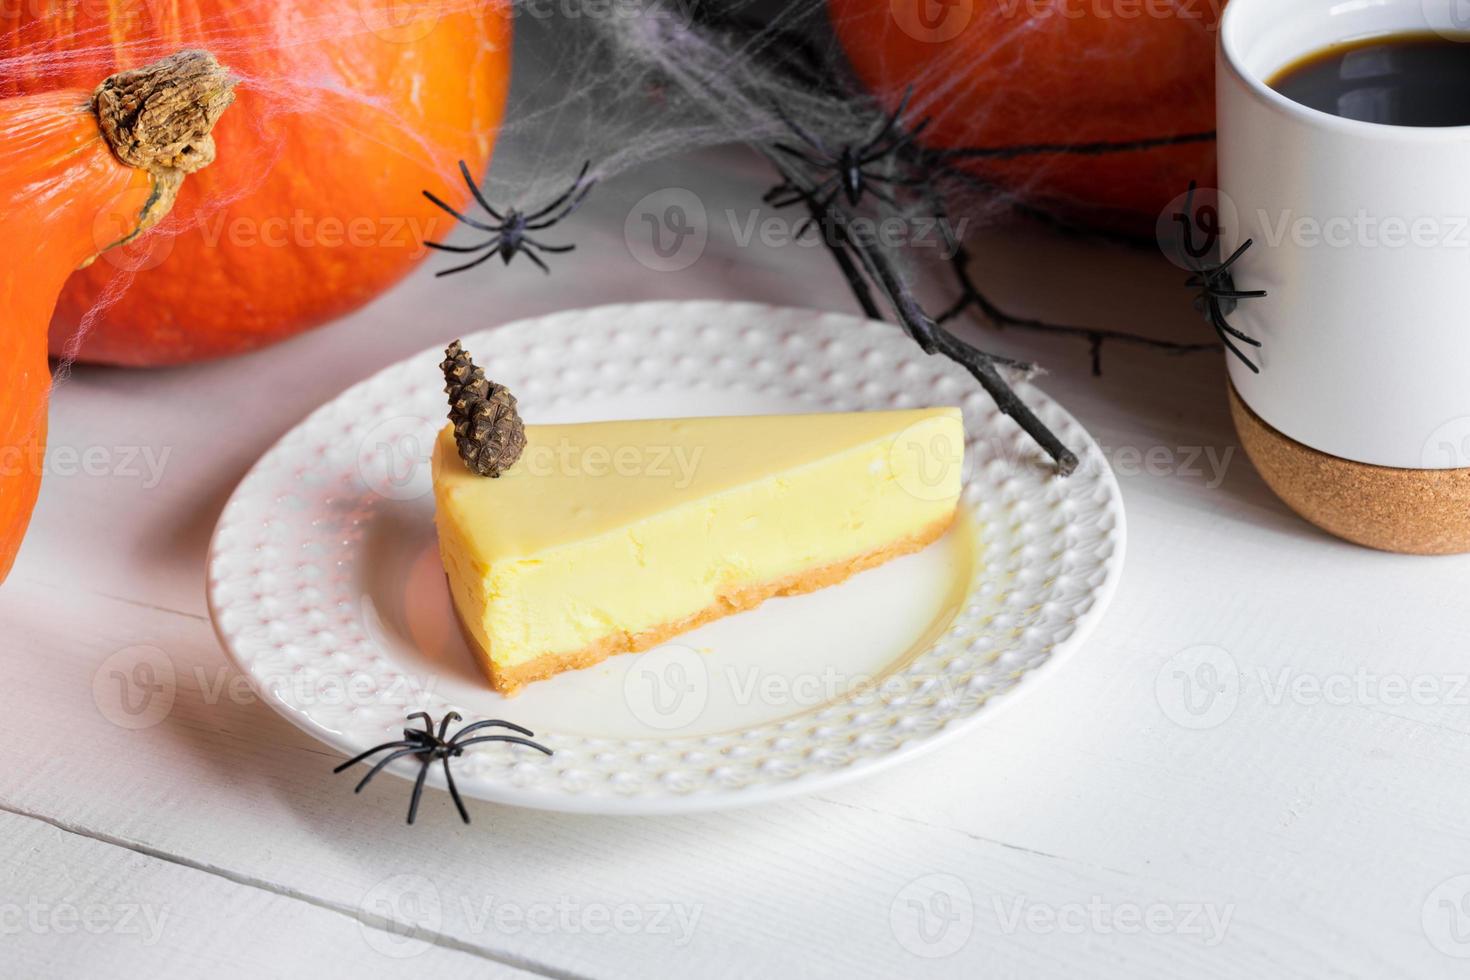 friandises d'halloween - morceau de tarte à la citrouille, tasse de thé ou de café avec des citrouilles et des araignées noires sur blanc. photo